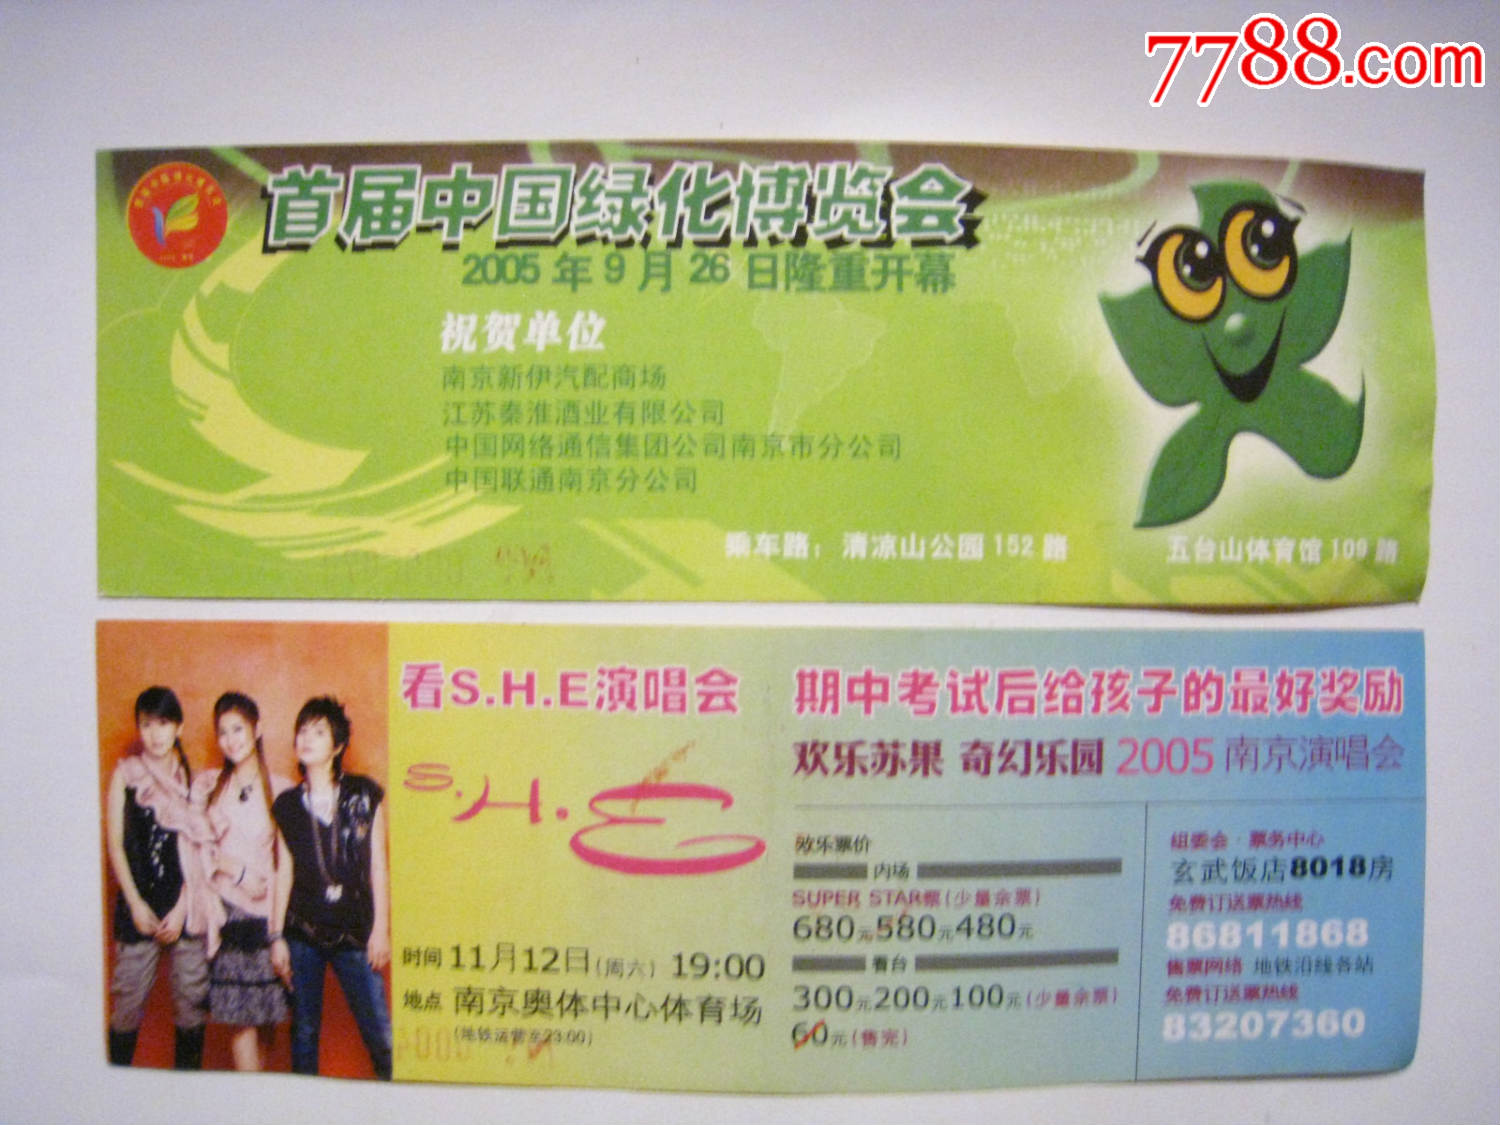 南京地铁票(首届绿博会和SHE演唱会)-价格:10